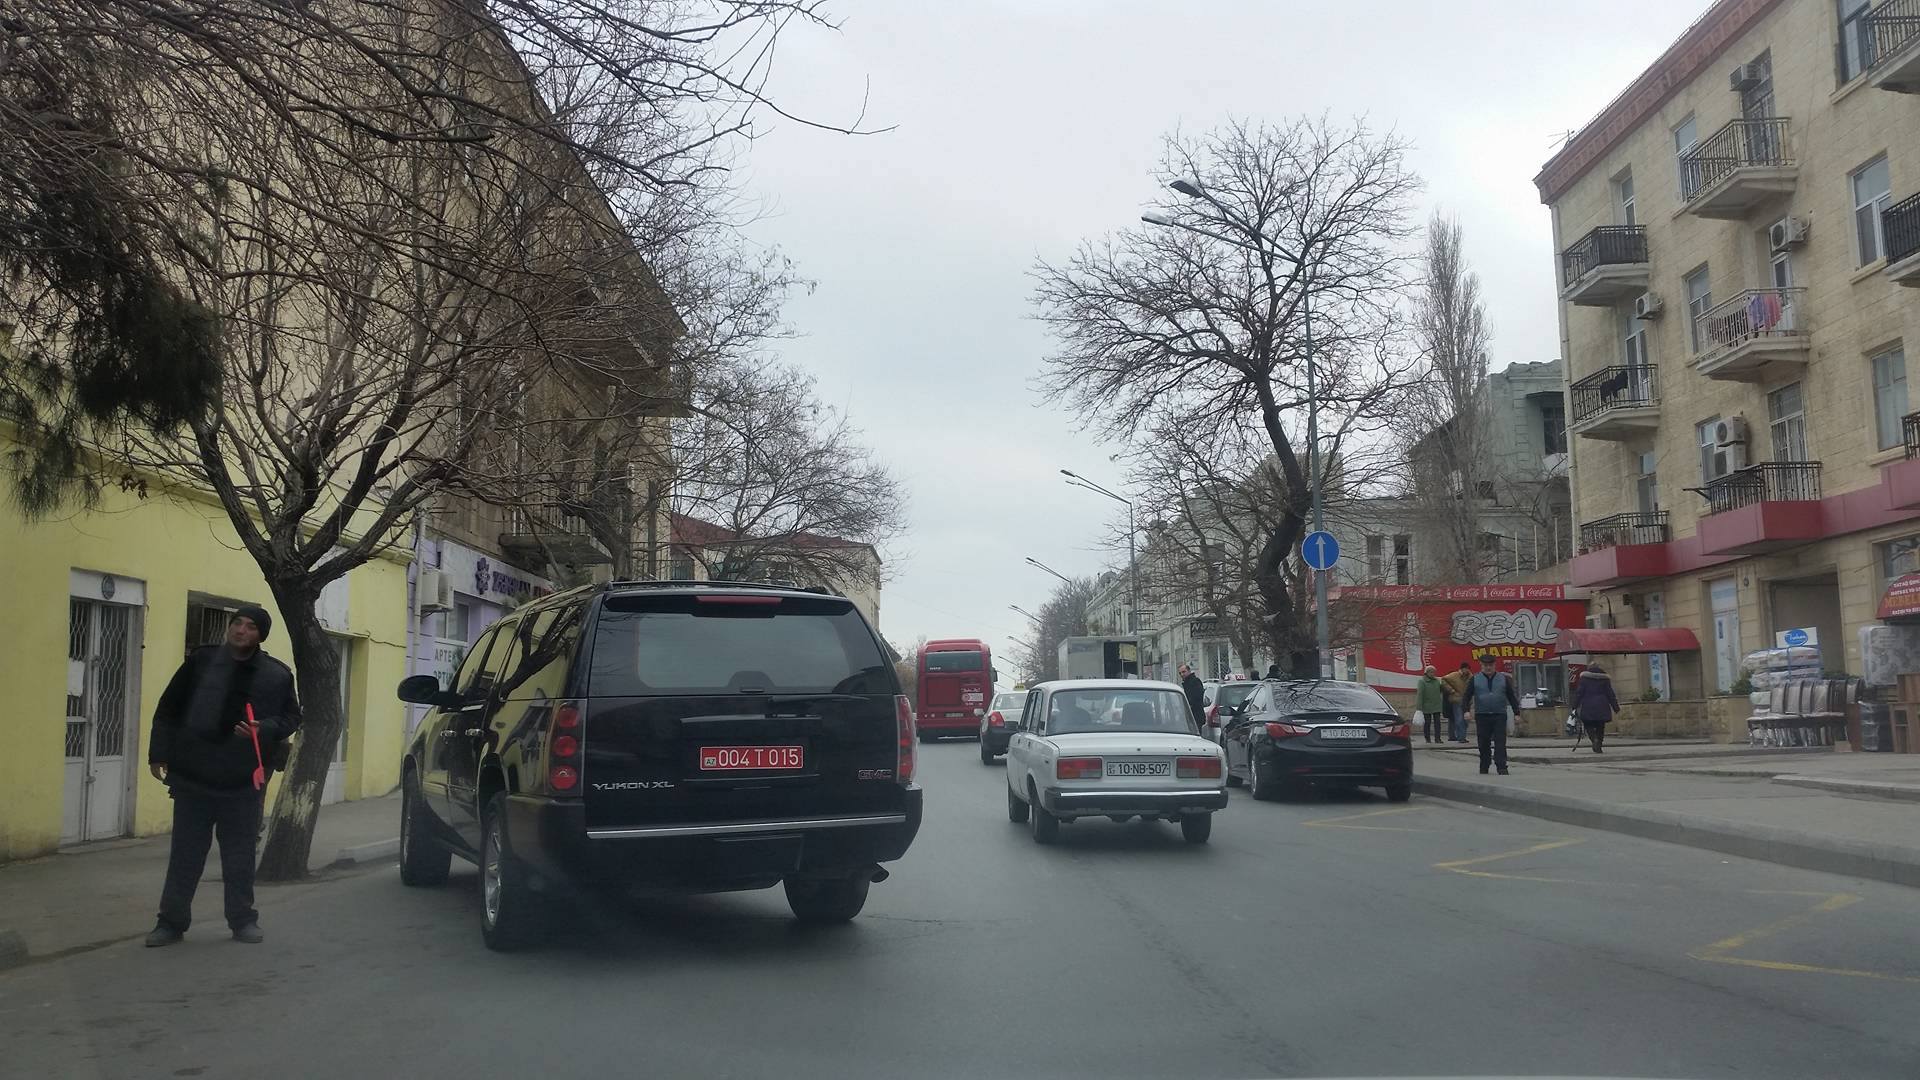 Yol polisi Bakıda qayda pozan səfirlik maşını ilə bağlı hərəkətə keçdi – FOTO